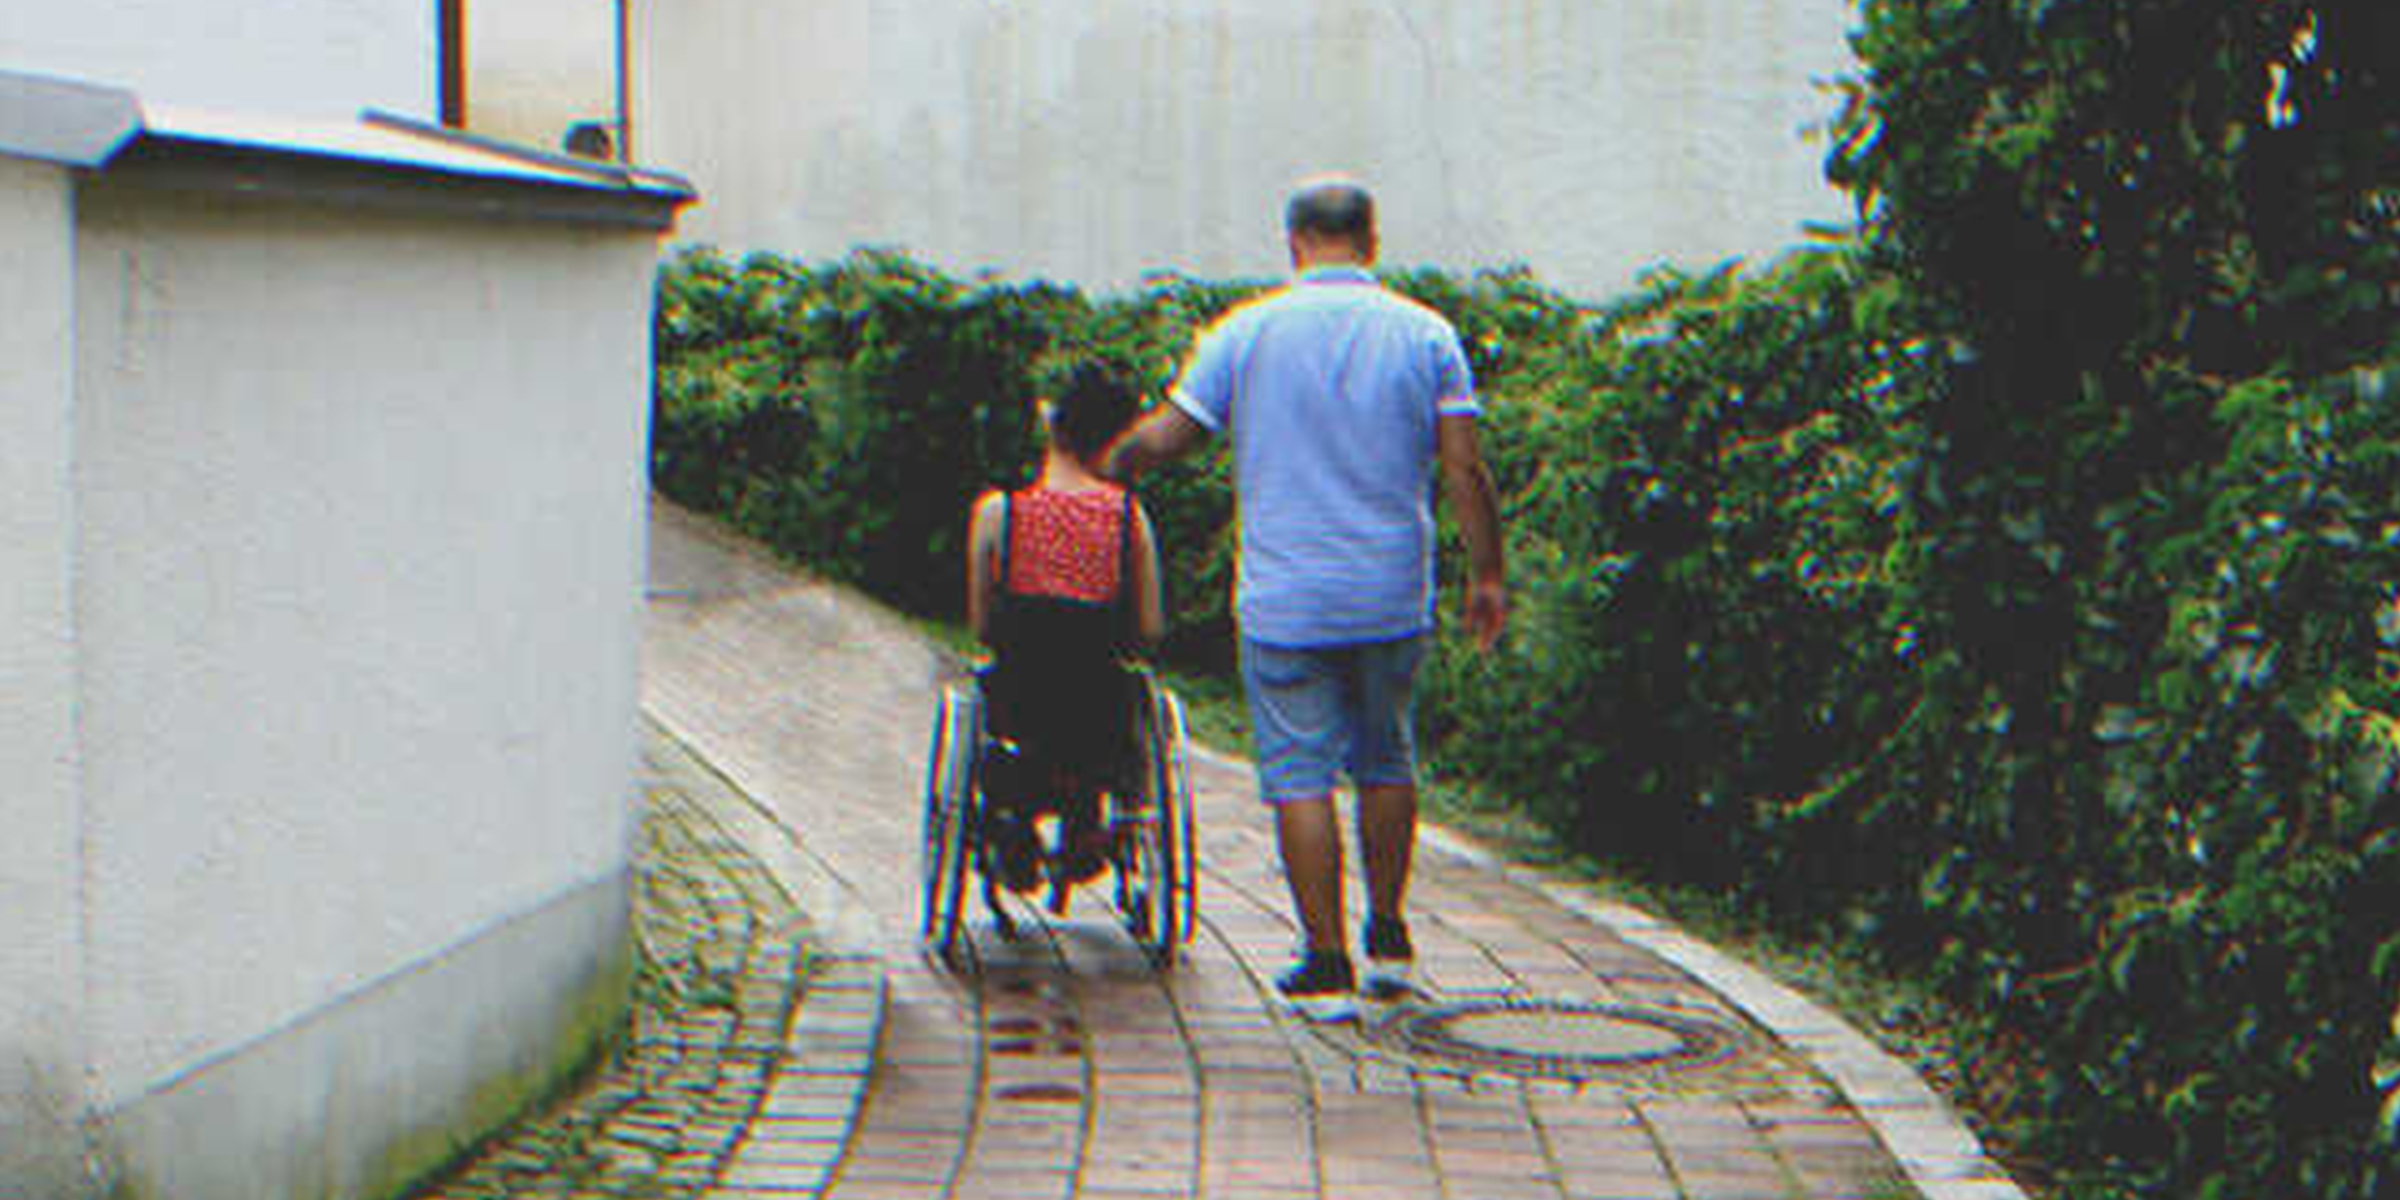 Mamá no reconoce a hija discapacitada tras dejarla con su padrastro - Historia del día